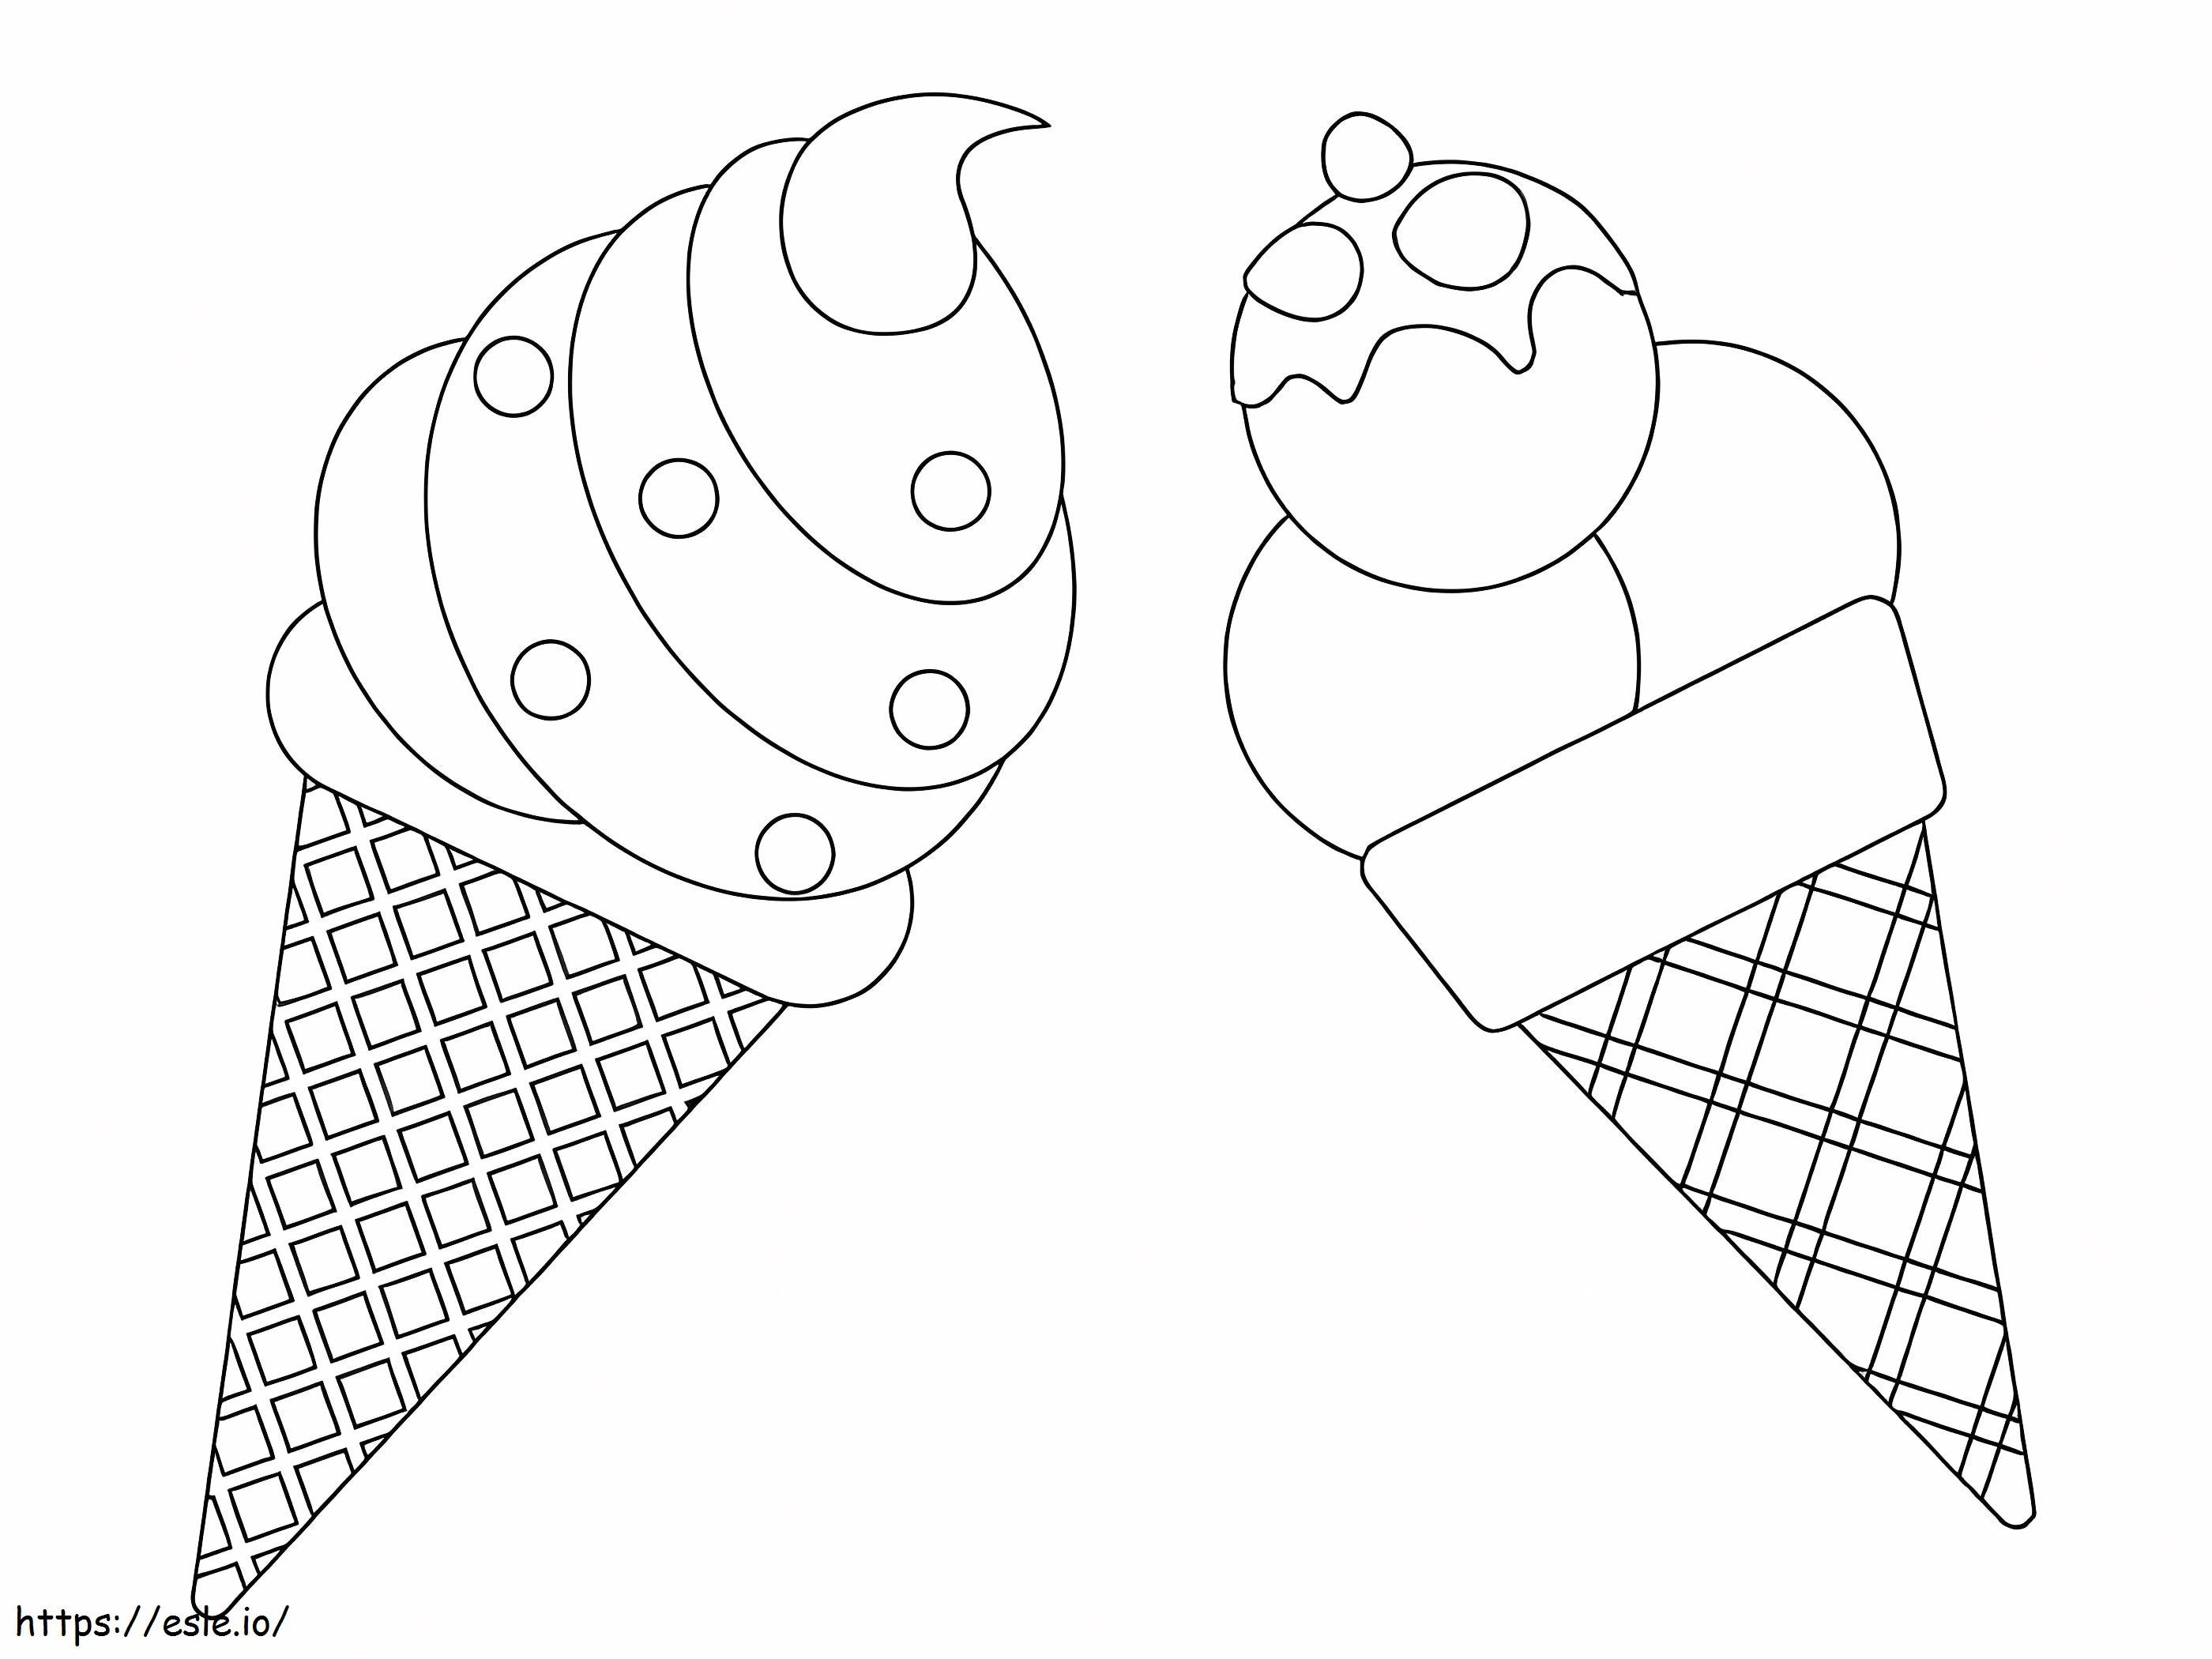 Zwei Eissorten ausmalbilder